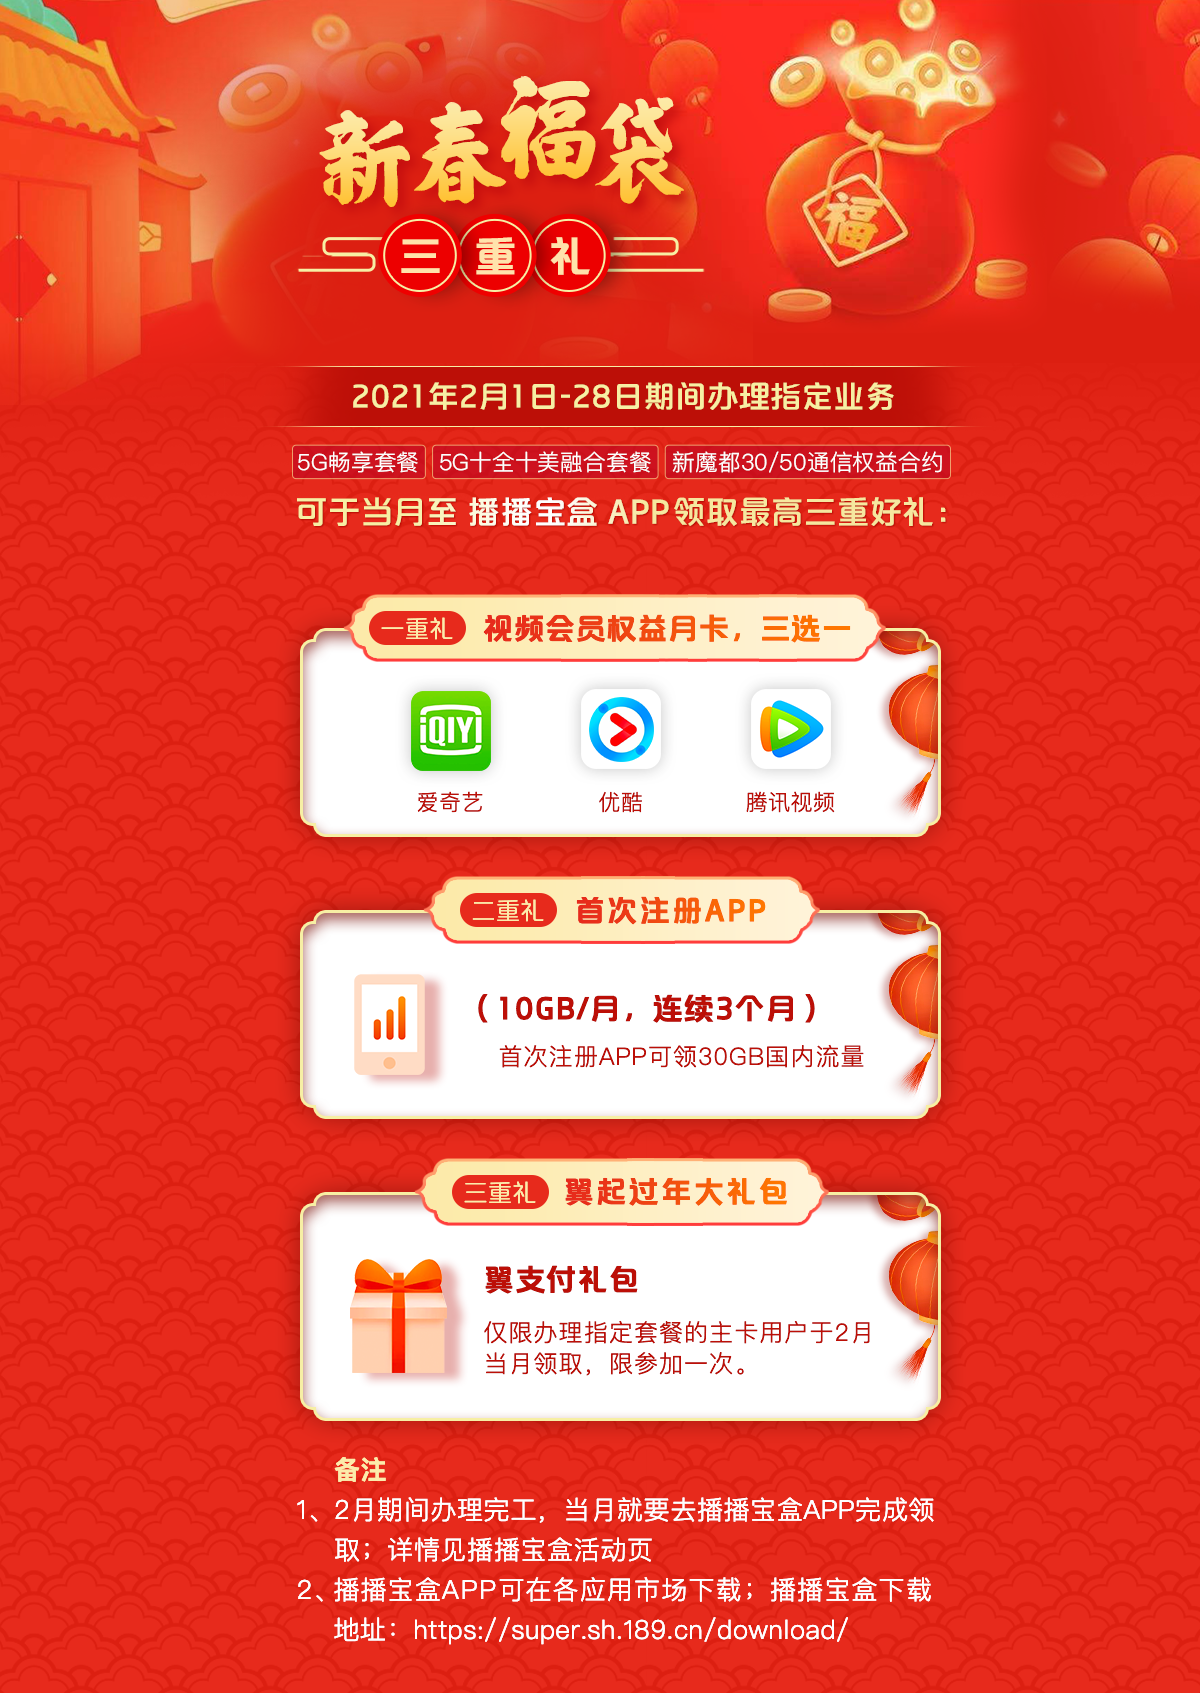 上林县居民畅享 5G 带来的便捷家居生活